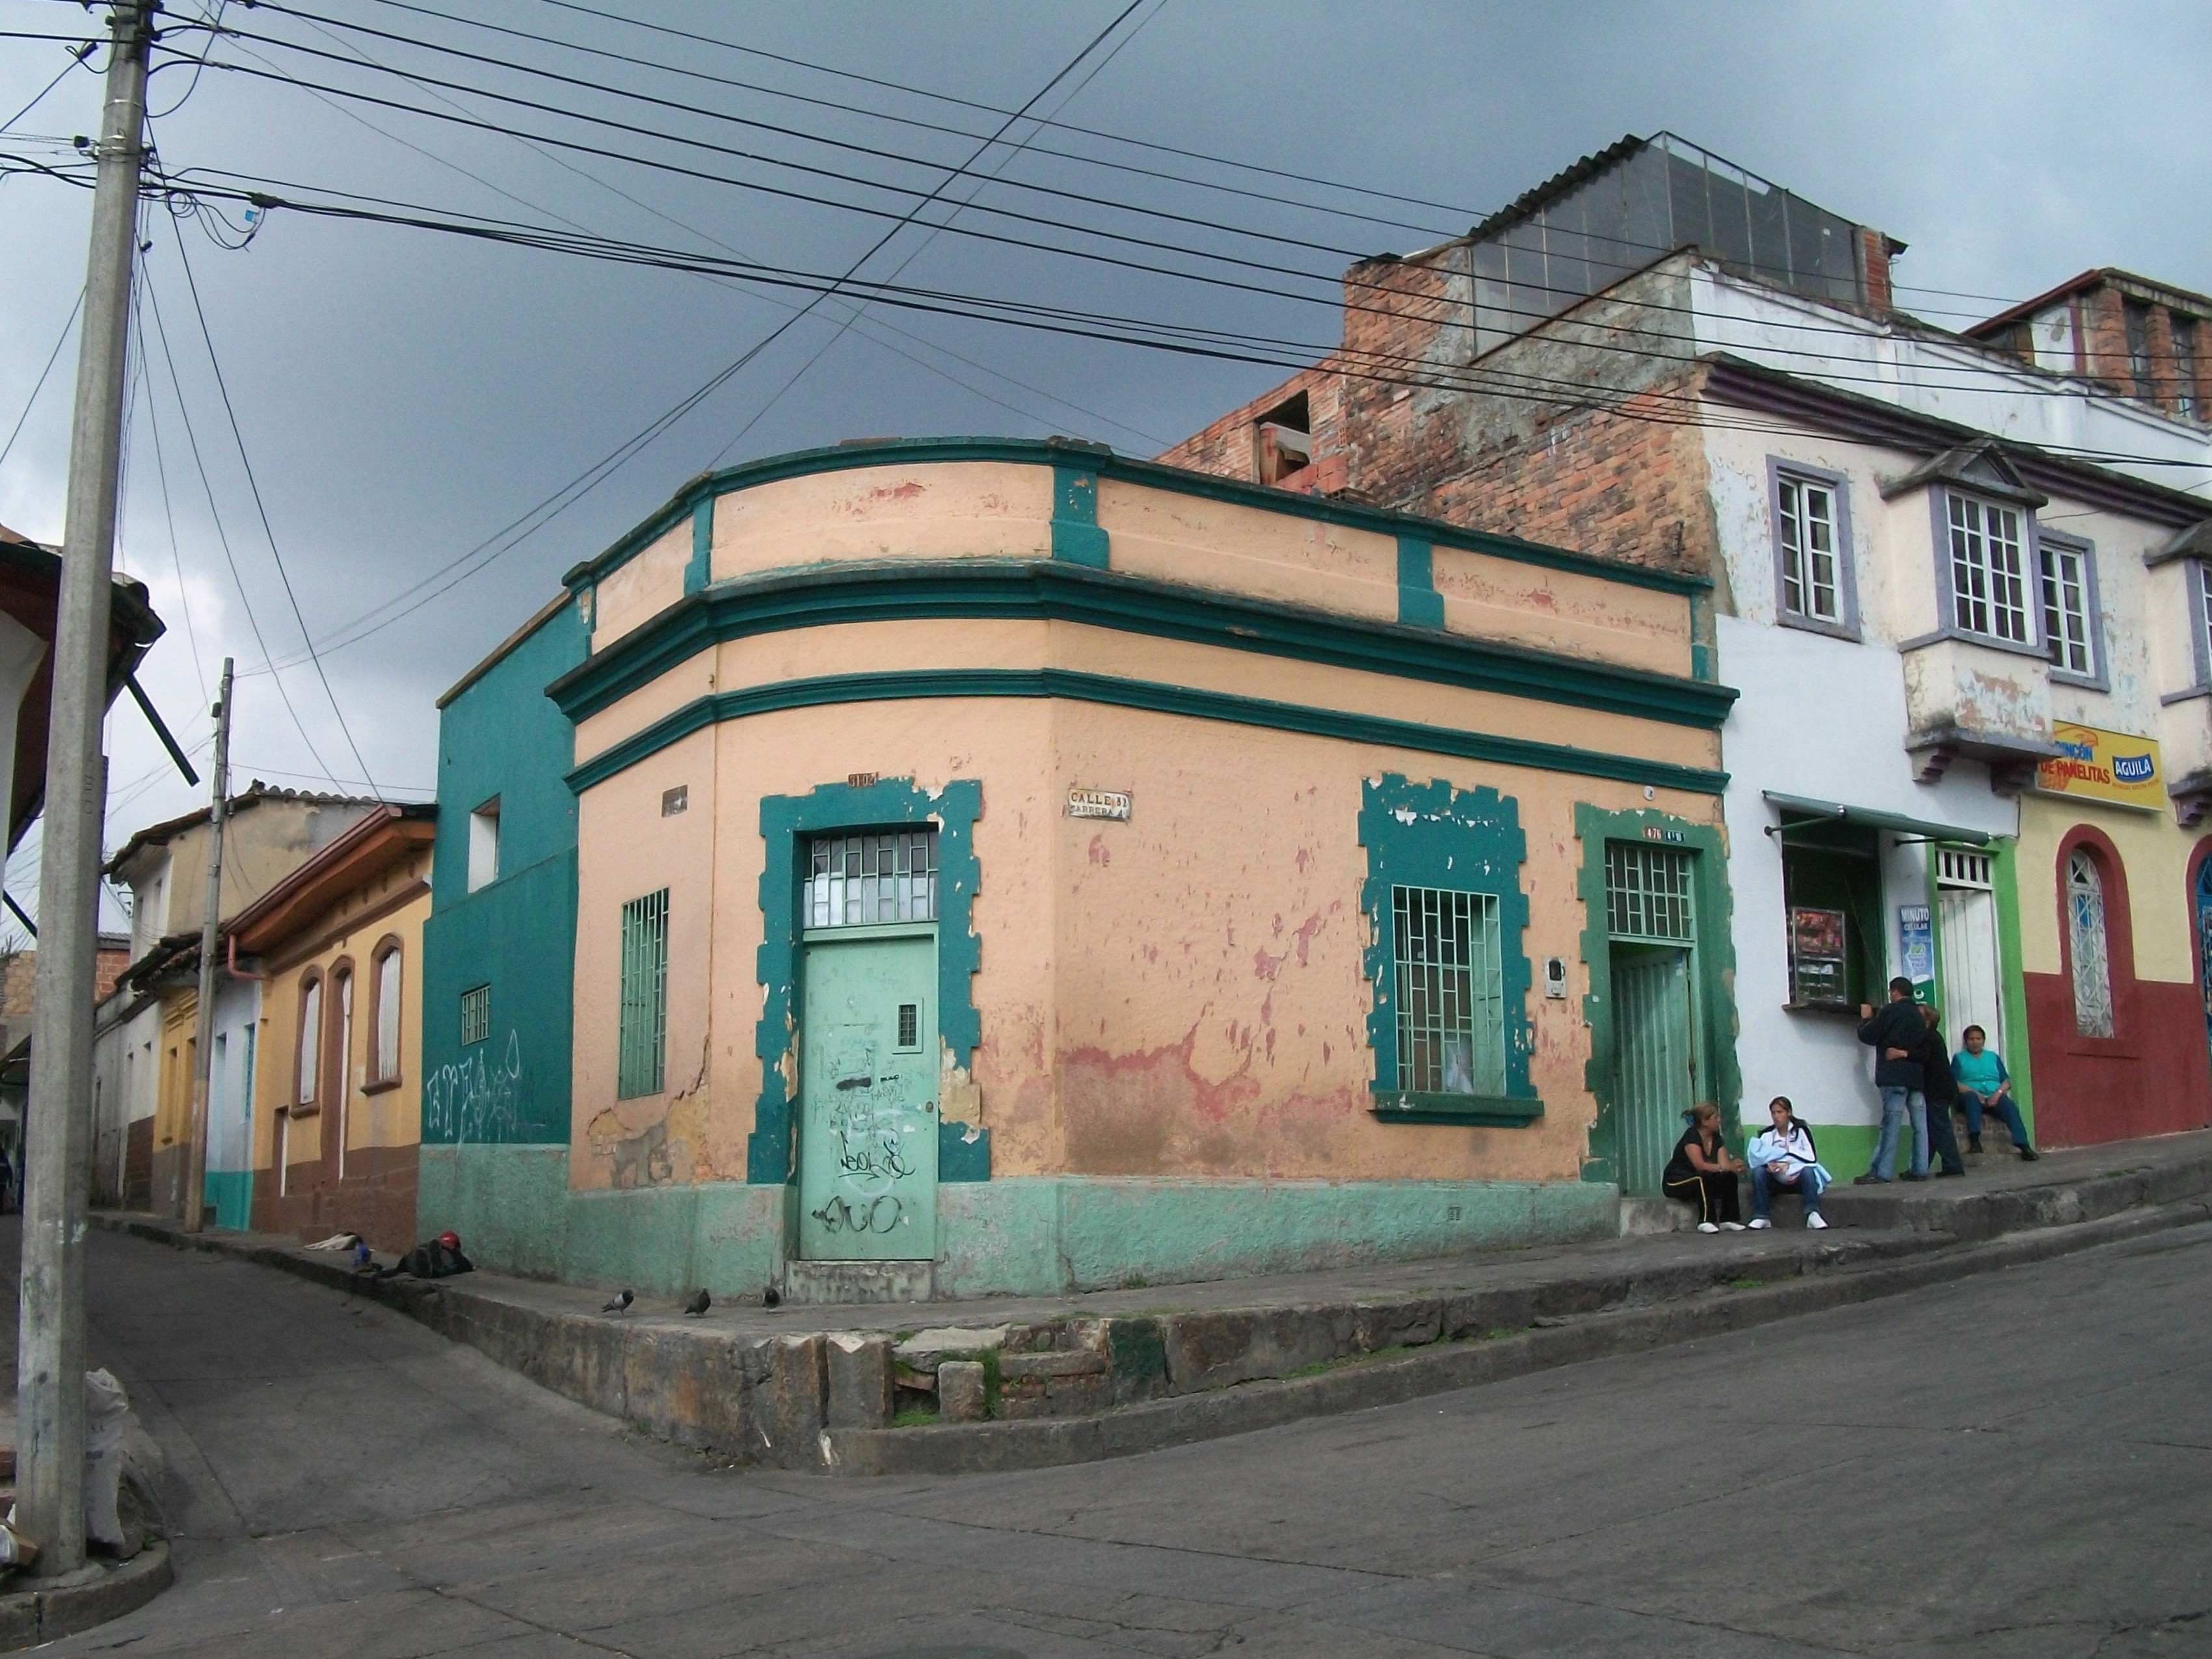 File:Bogotá barrio La Perseverancia.JPG - Wikimedia Commons